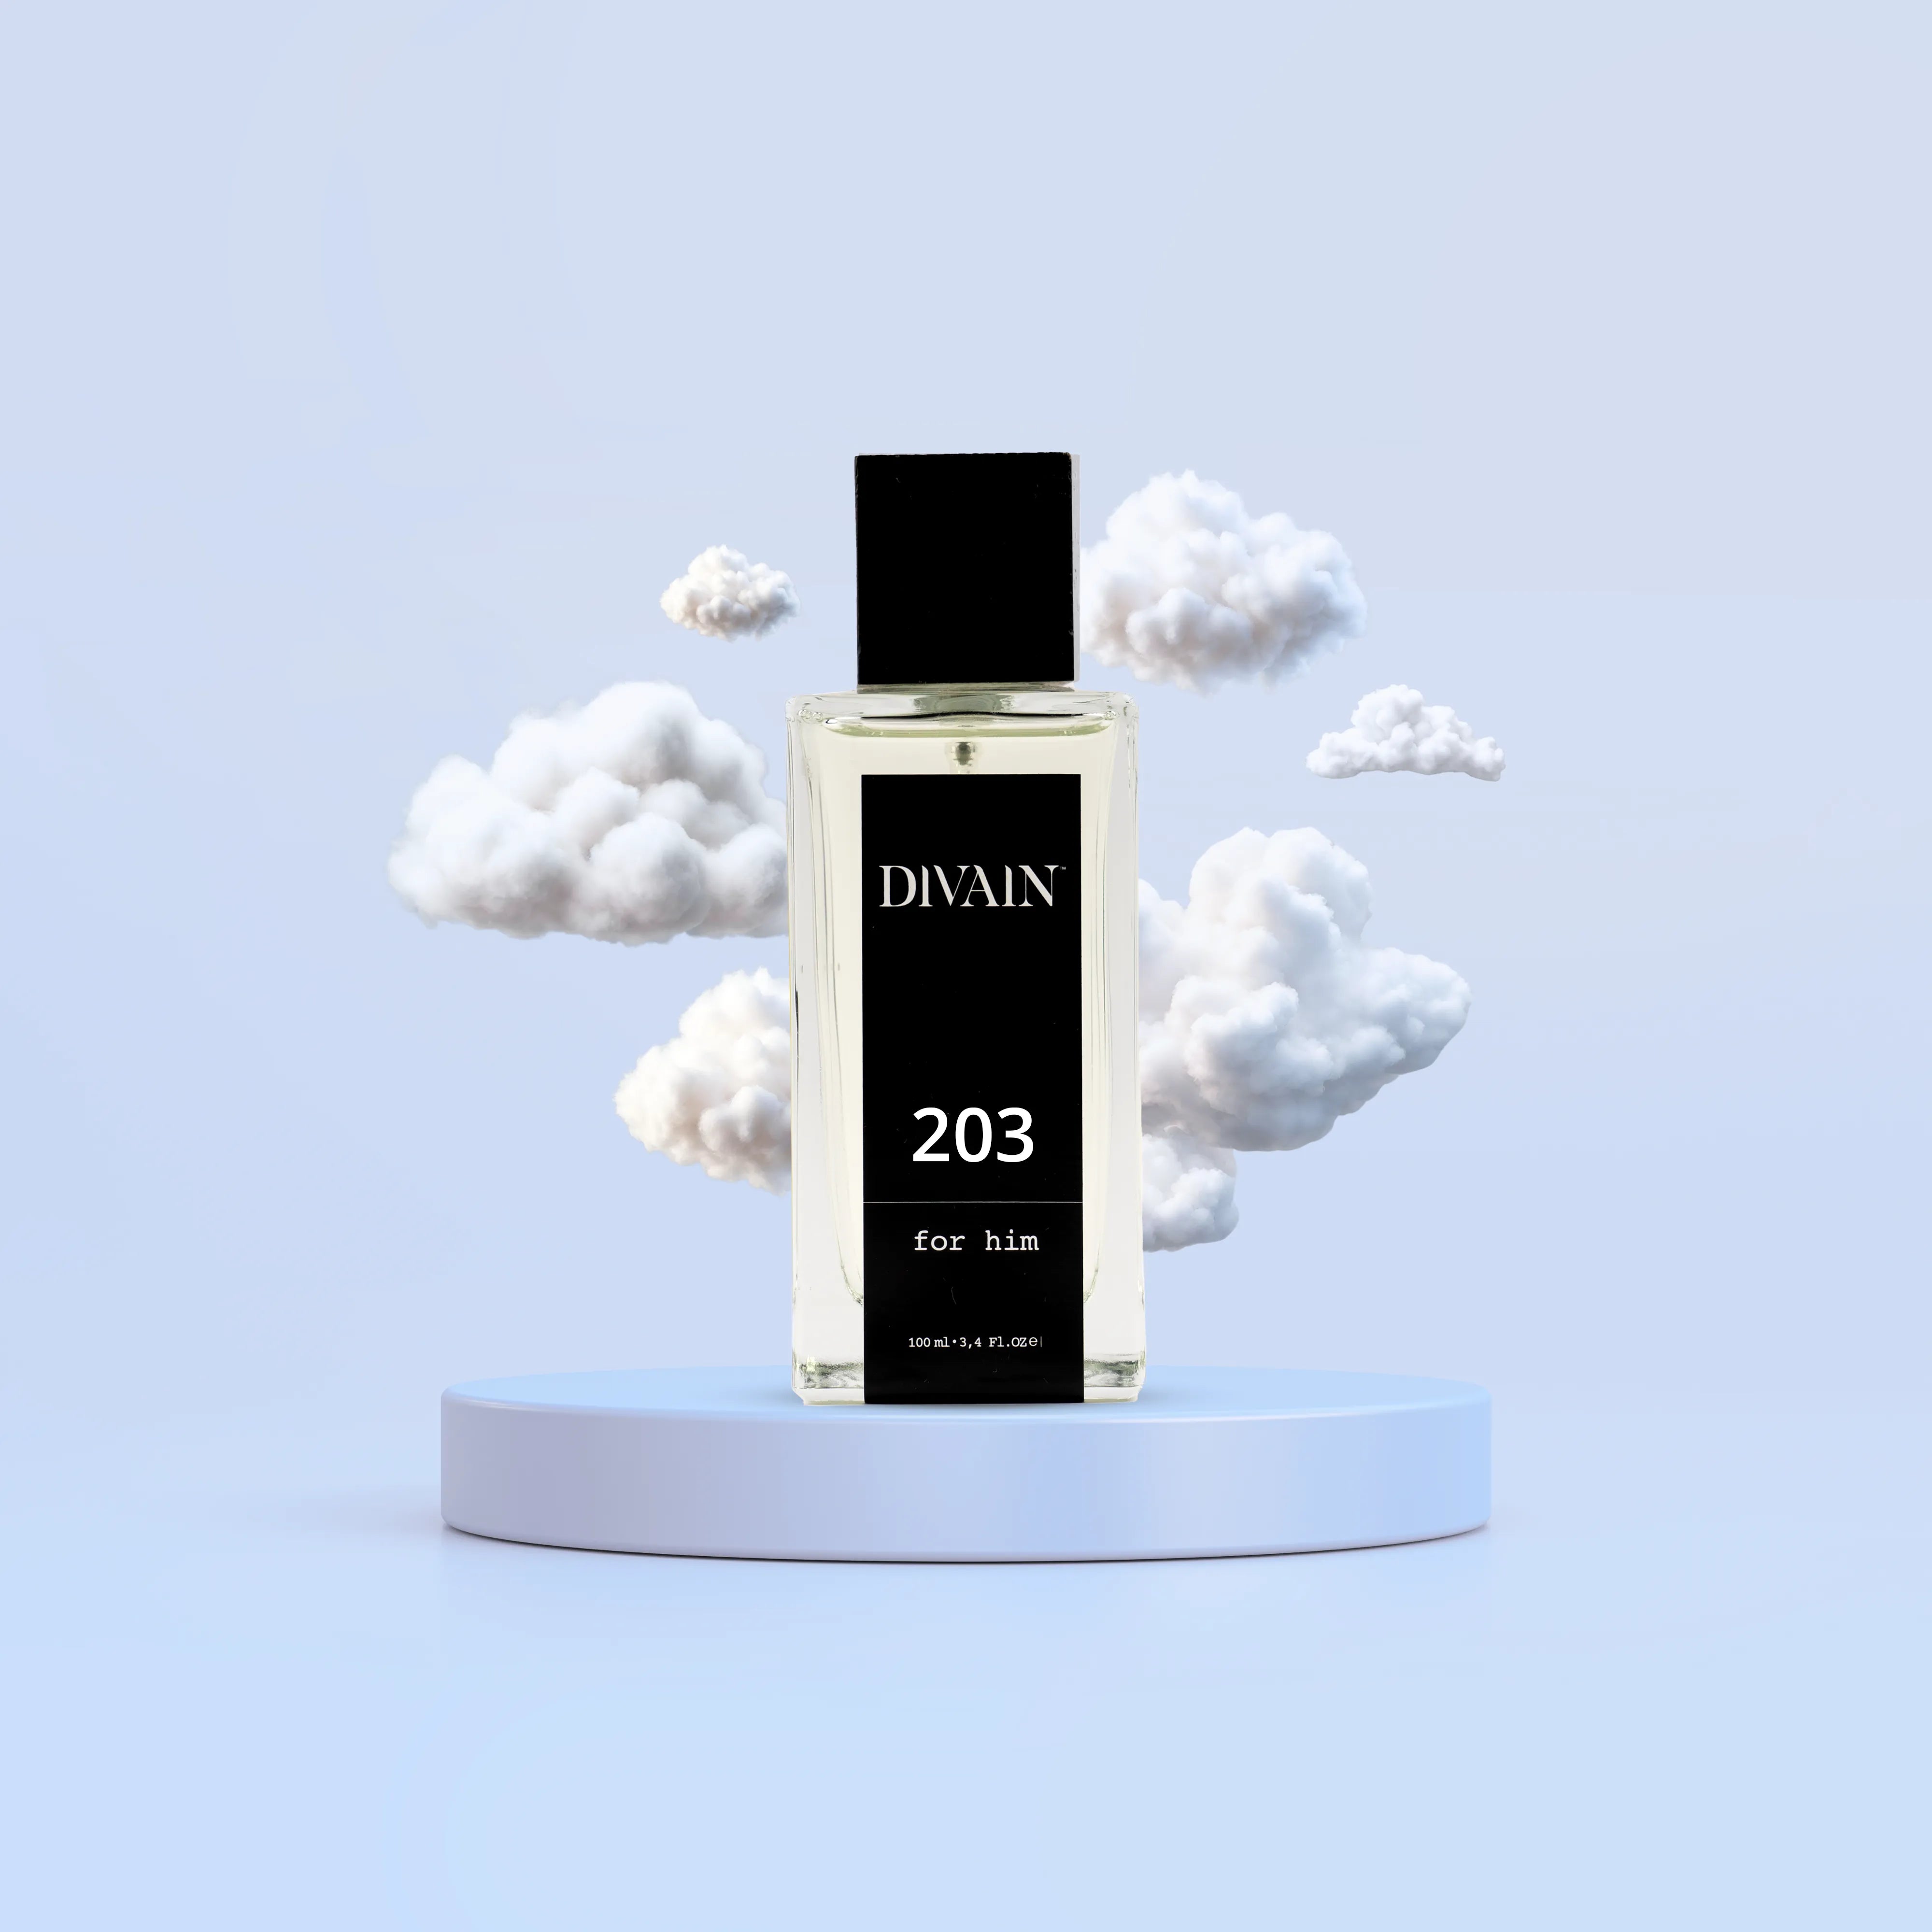 DIVAIN-203 | Similar a Egoiste Platinum de Chanel | Hombre